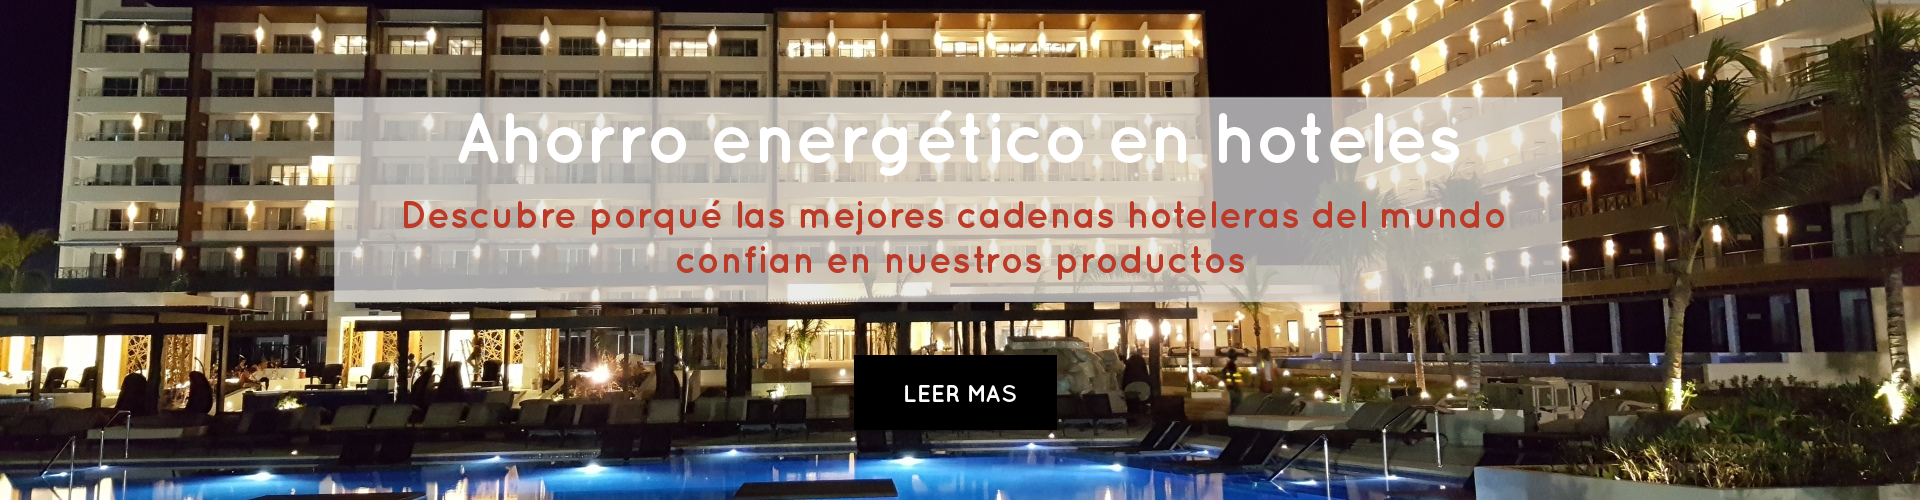 ahorro energetico en hoteles descubre porque las mejores cadenas hoteleras del mundo confian en nuestros productos